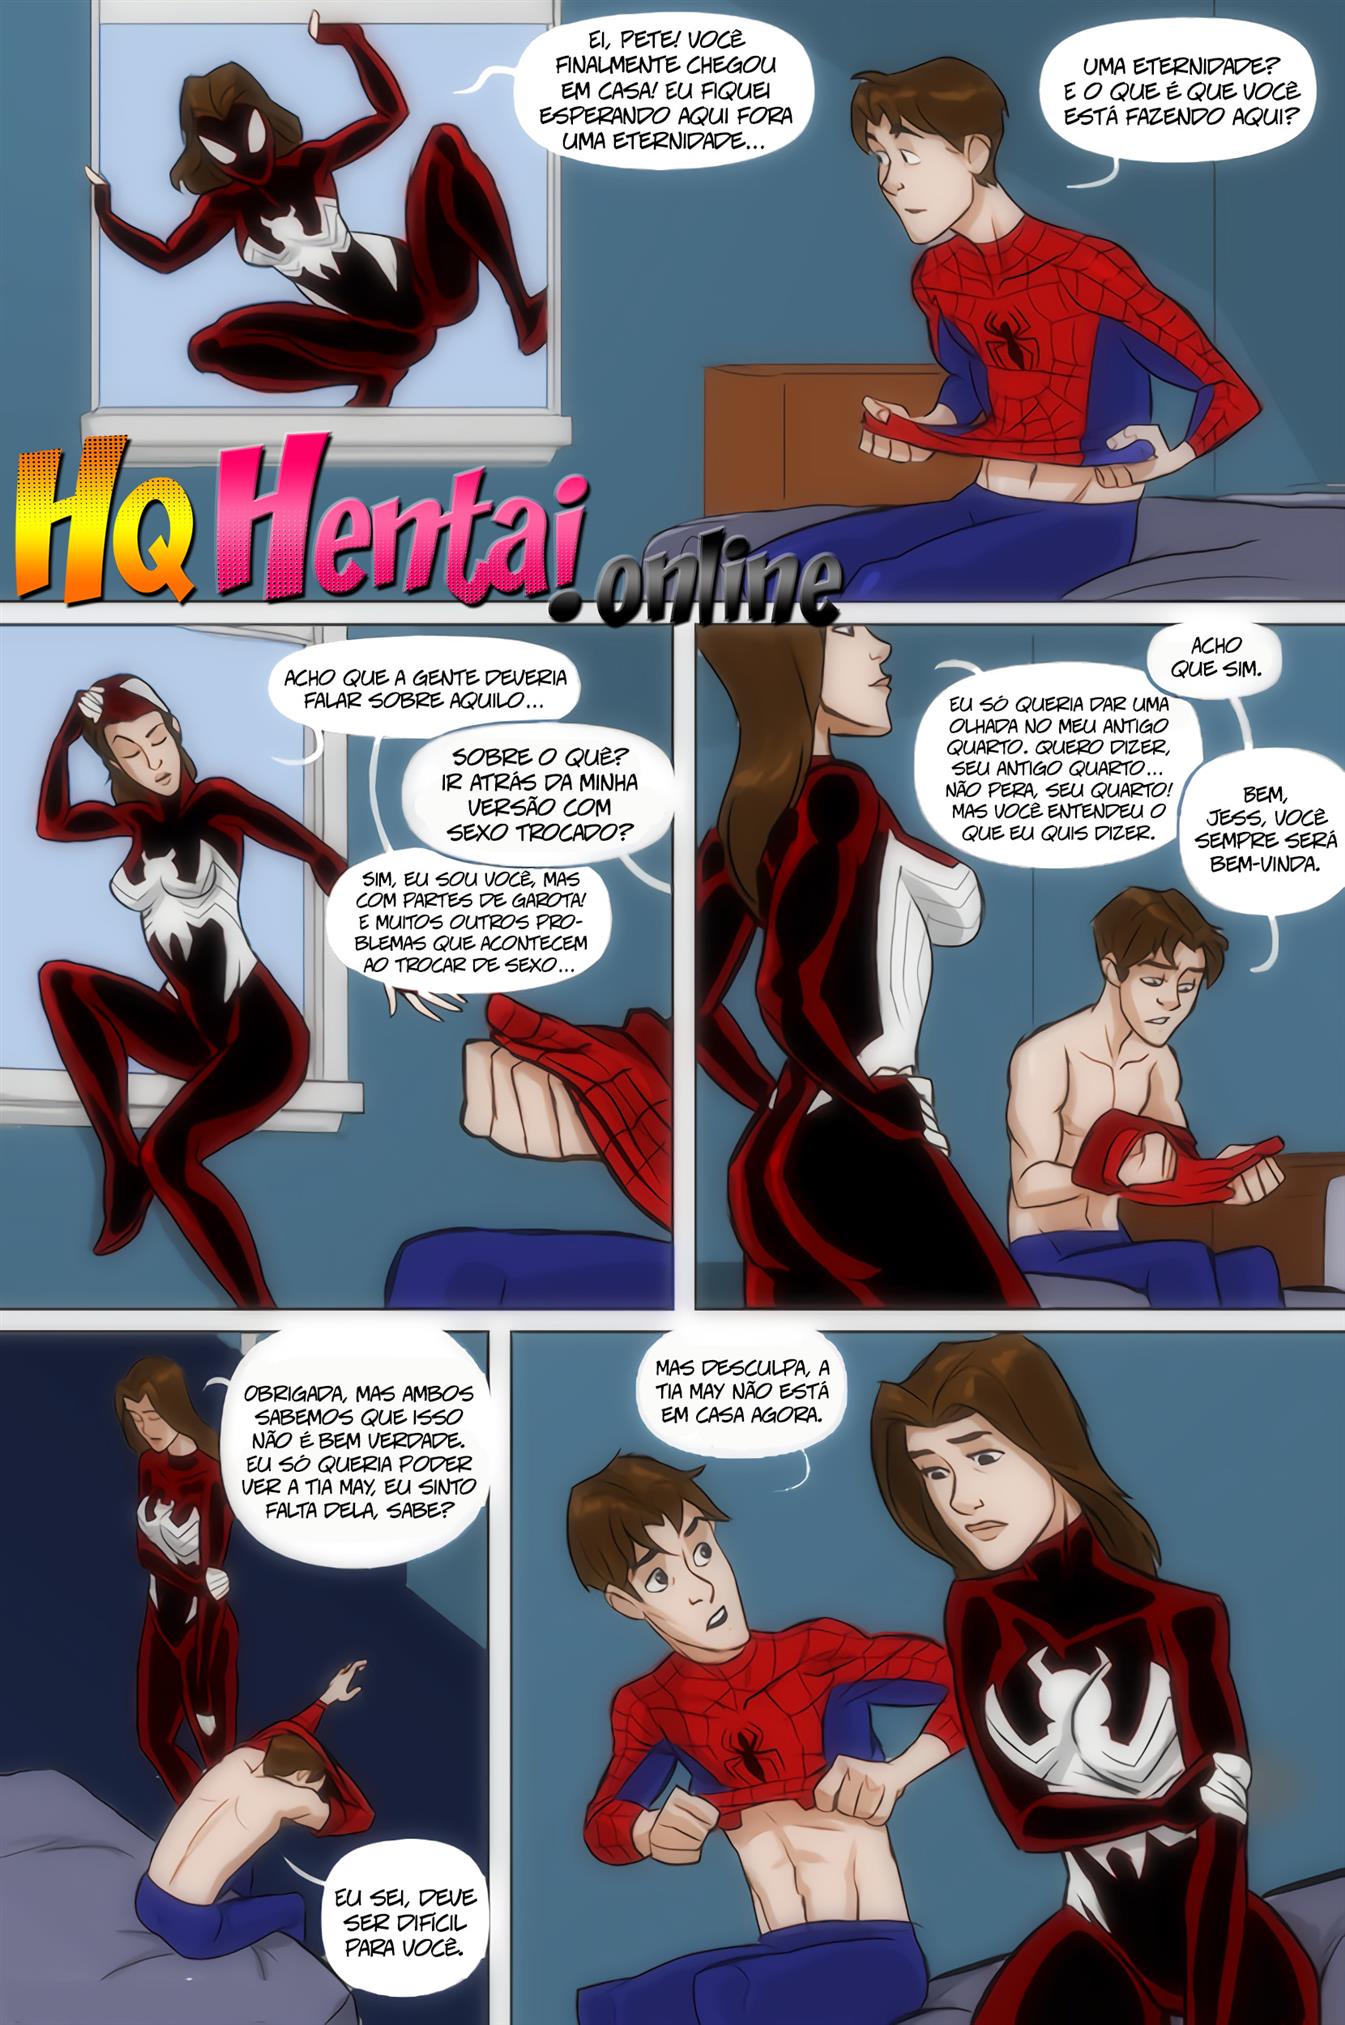 Ver comics porn - Marvel Hentai do Incesto Aranha